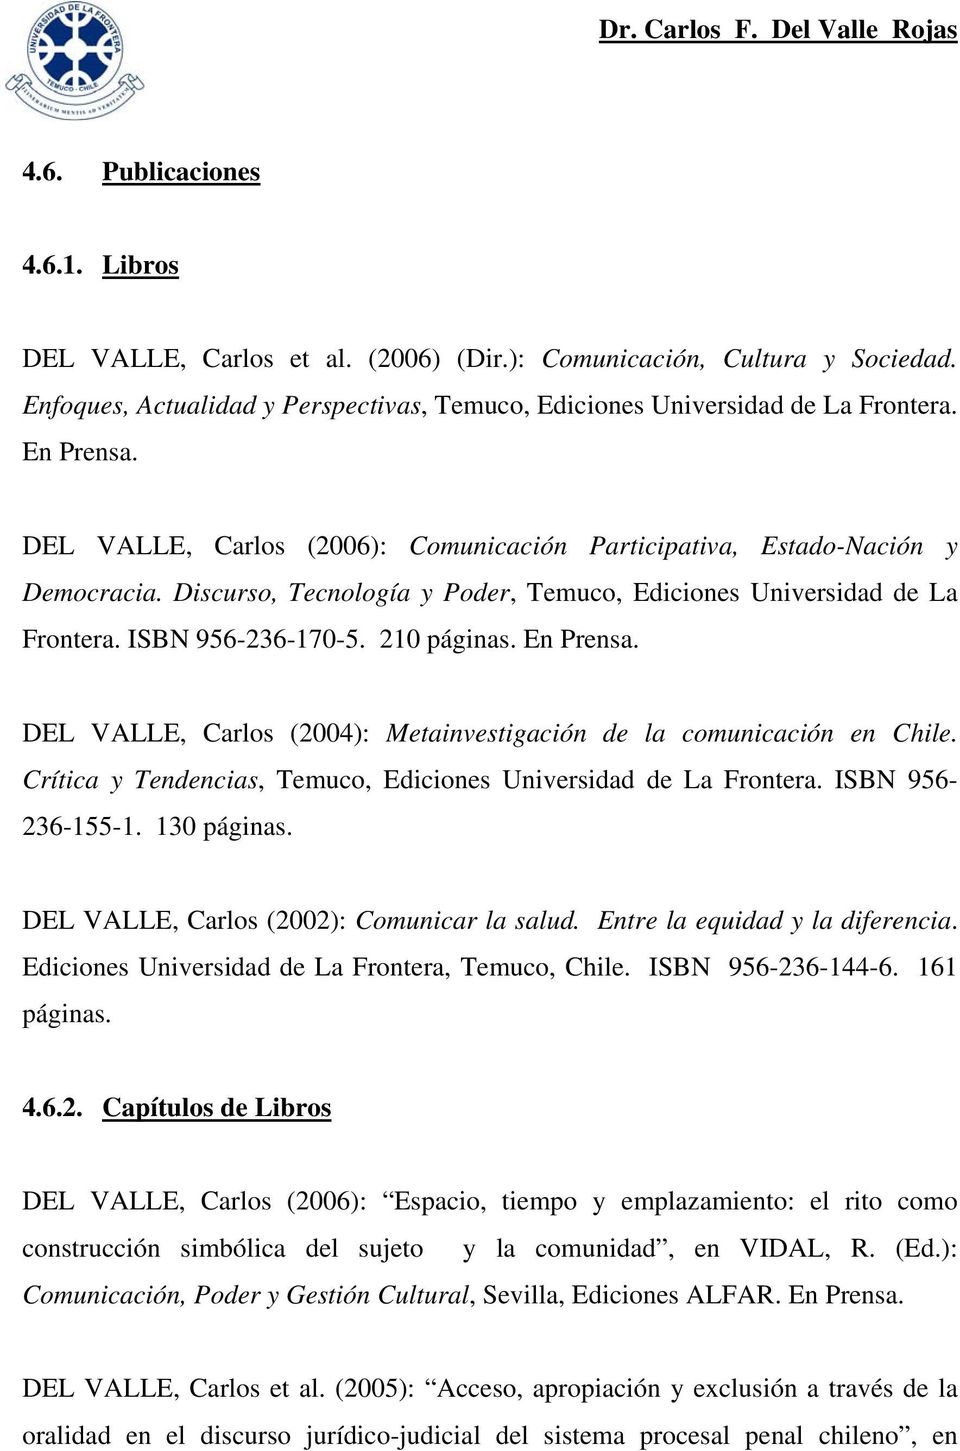 En Prensa. DEL VALLE, Carlos (2004): Metainvestigación de la comunicación en Chile. Crítica y Tendencias, Temuco, Ediciones Universidad de La Frontera. ISBN 956-236-155-1. 130 páginas.